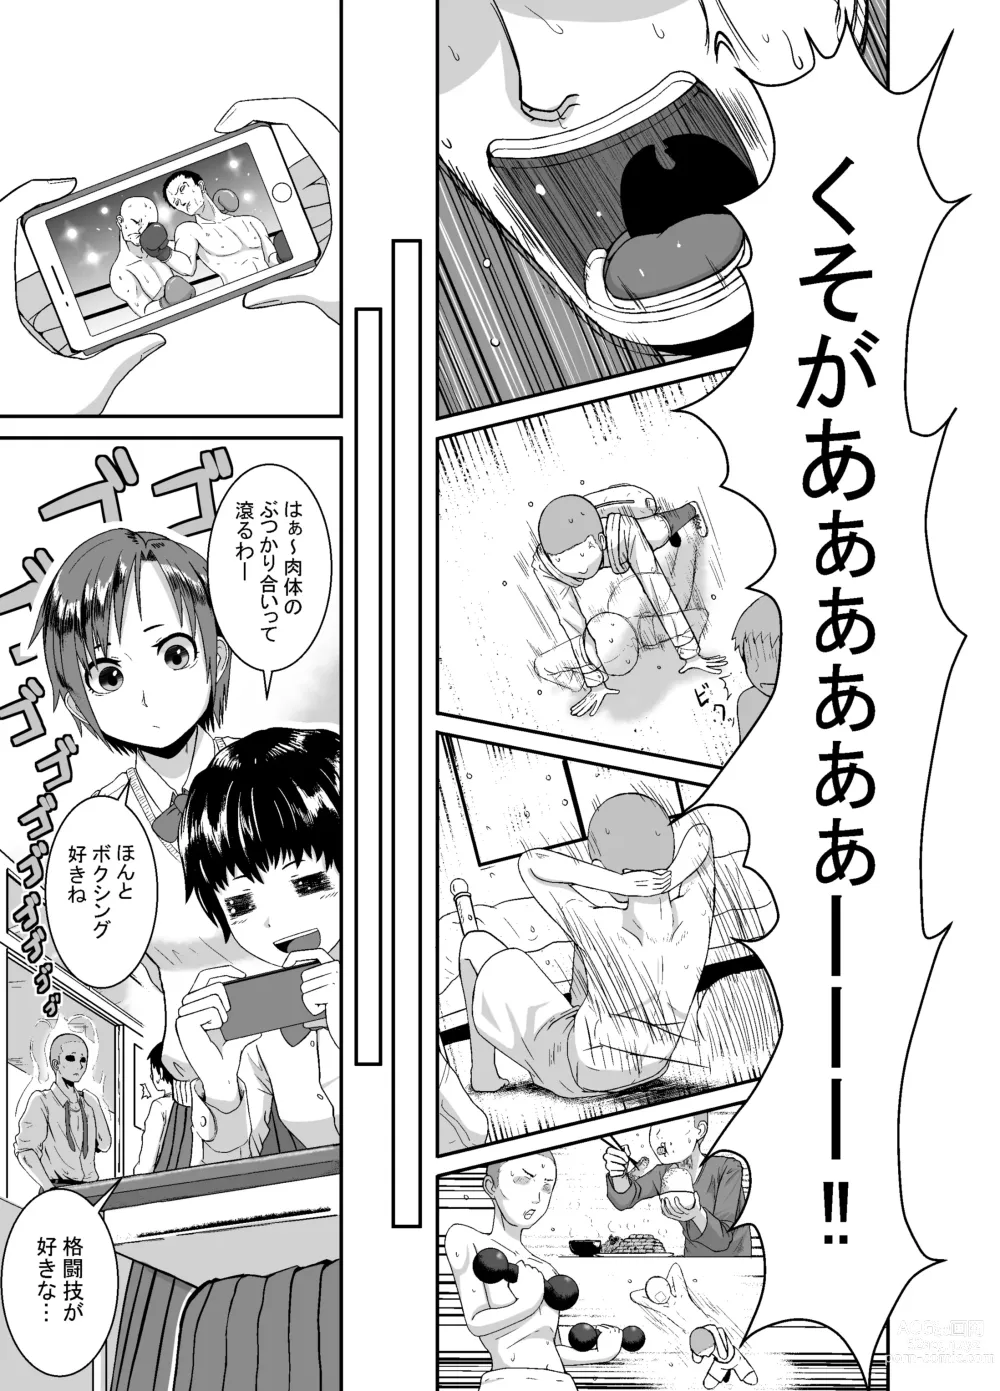 Page 6 of doujinshi Kimi ga Yarareru Kurai nara ~Genkikko Crisis~